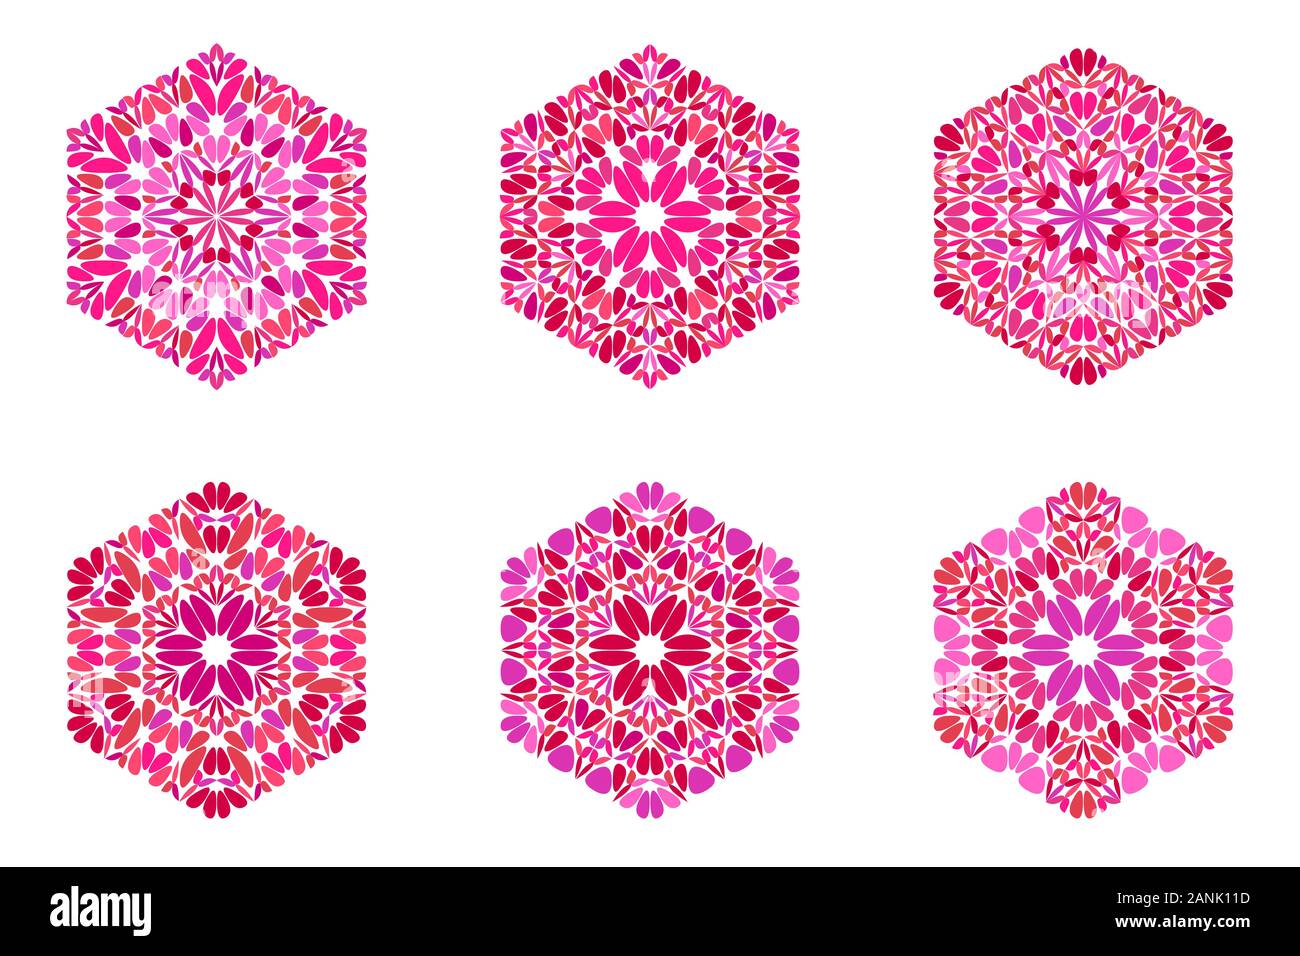 Reich verzierte isoliert Blütenblatt Hexagon-form eingestellt - Geometrische geometrische farbenfrohe abstrakte Vektorgrafiken Stock Vektor